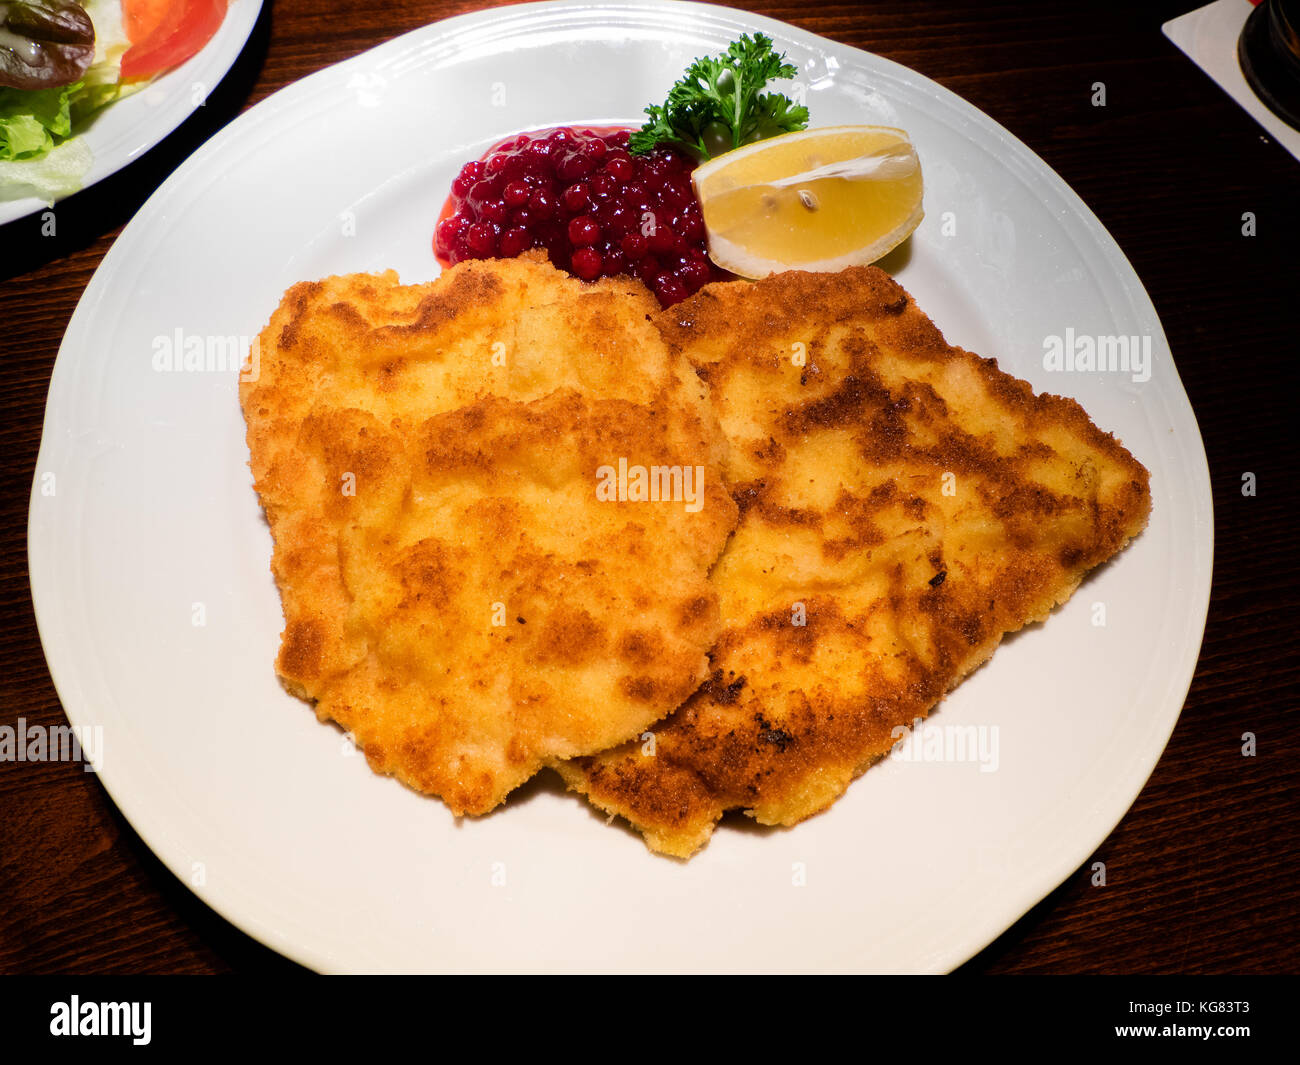 Delicioso Wiener Schnitzel, tradicional plato de carne de Austria y Alemania Foto de stock